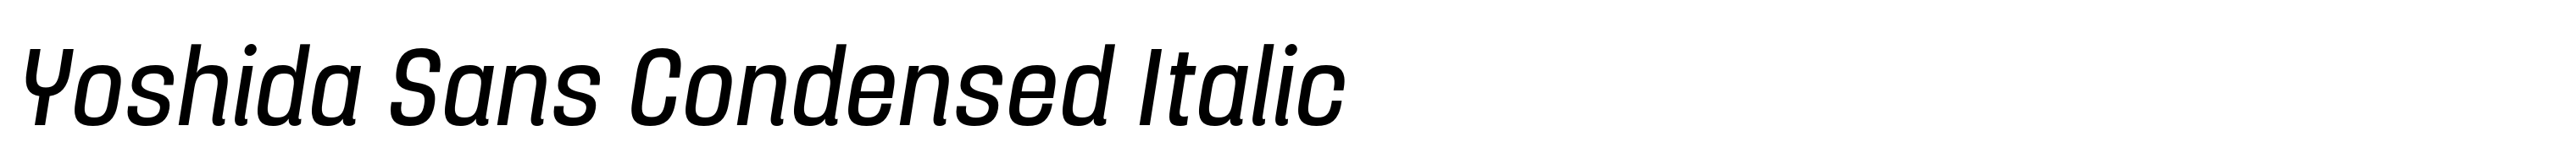 Yoshida Sans Condensed Italic